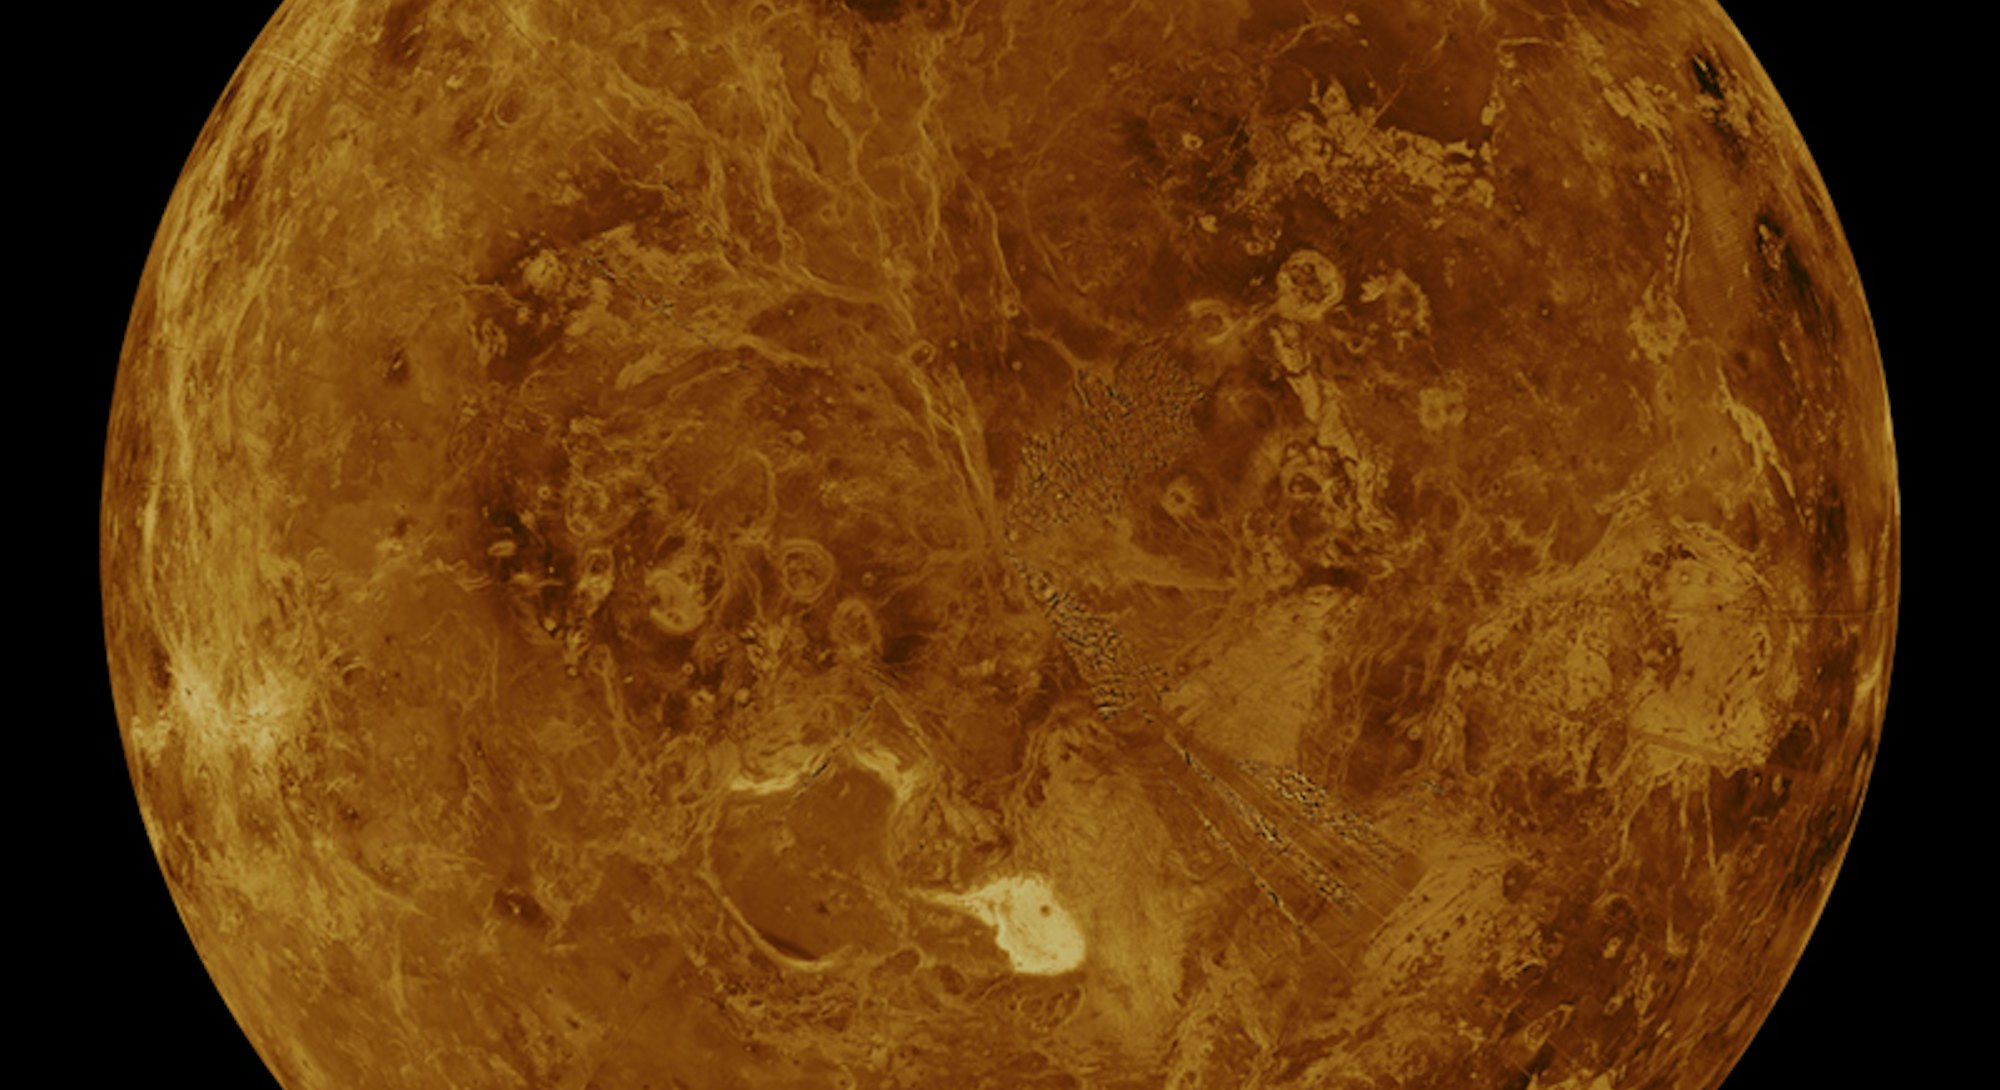 venus surface false color image